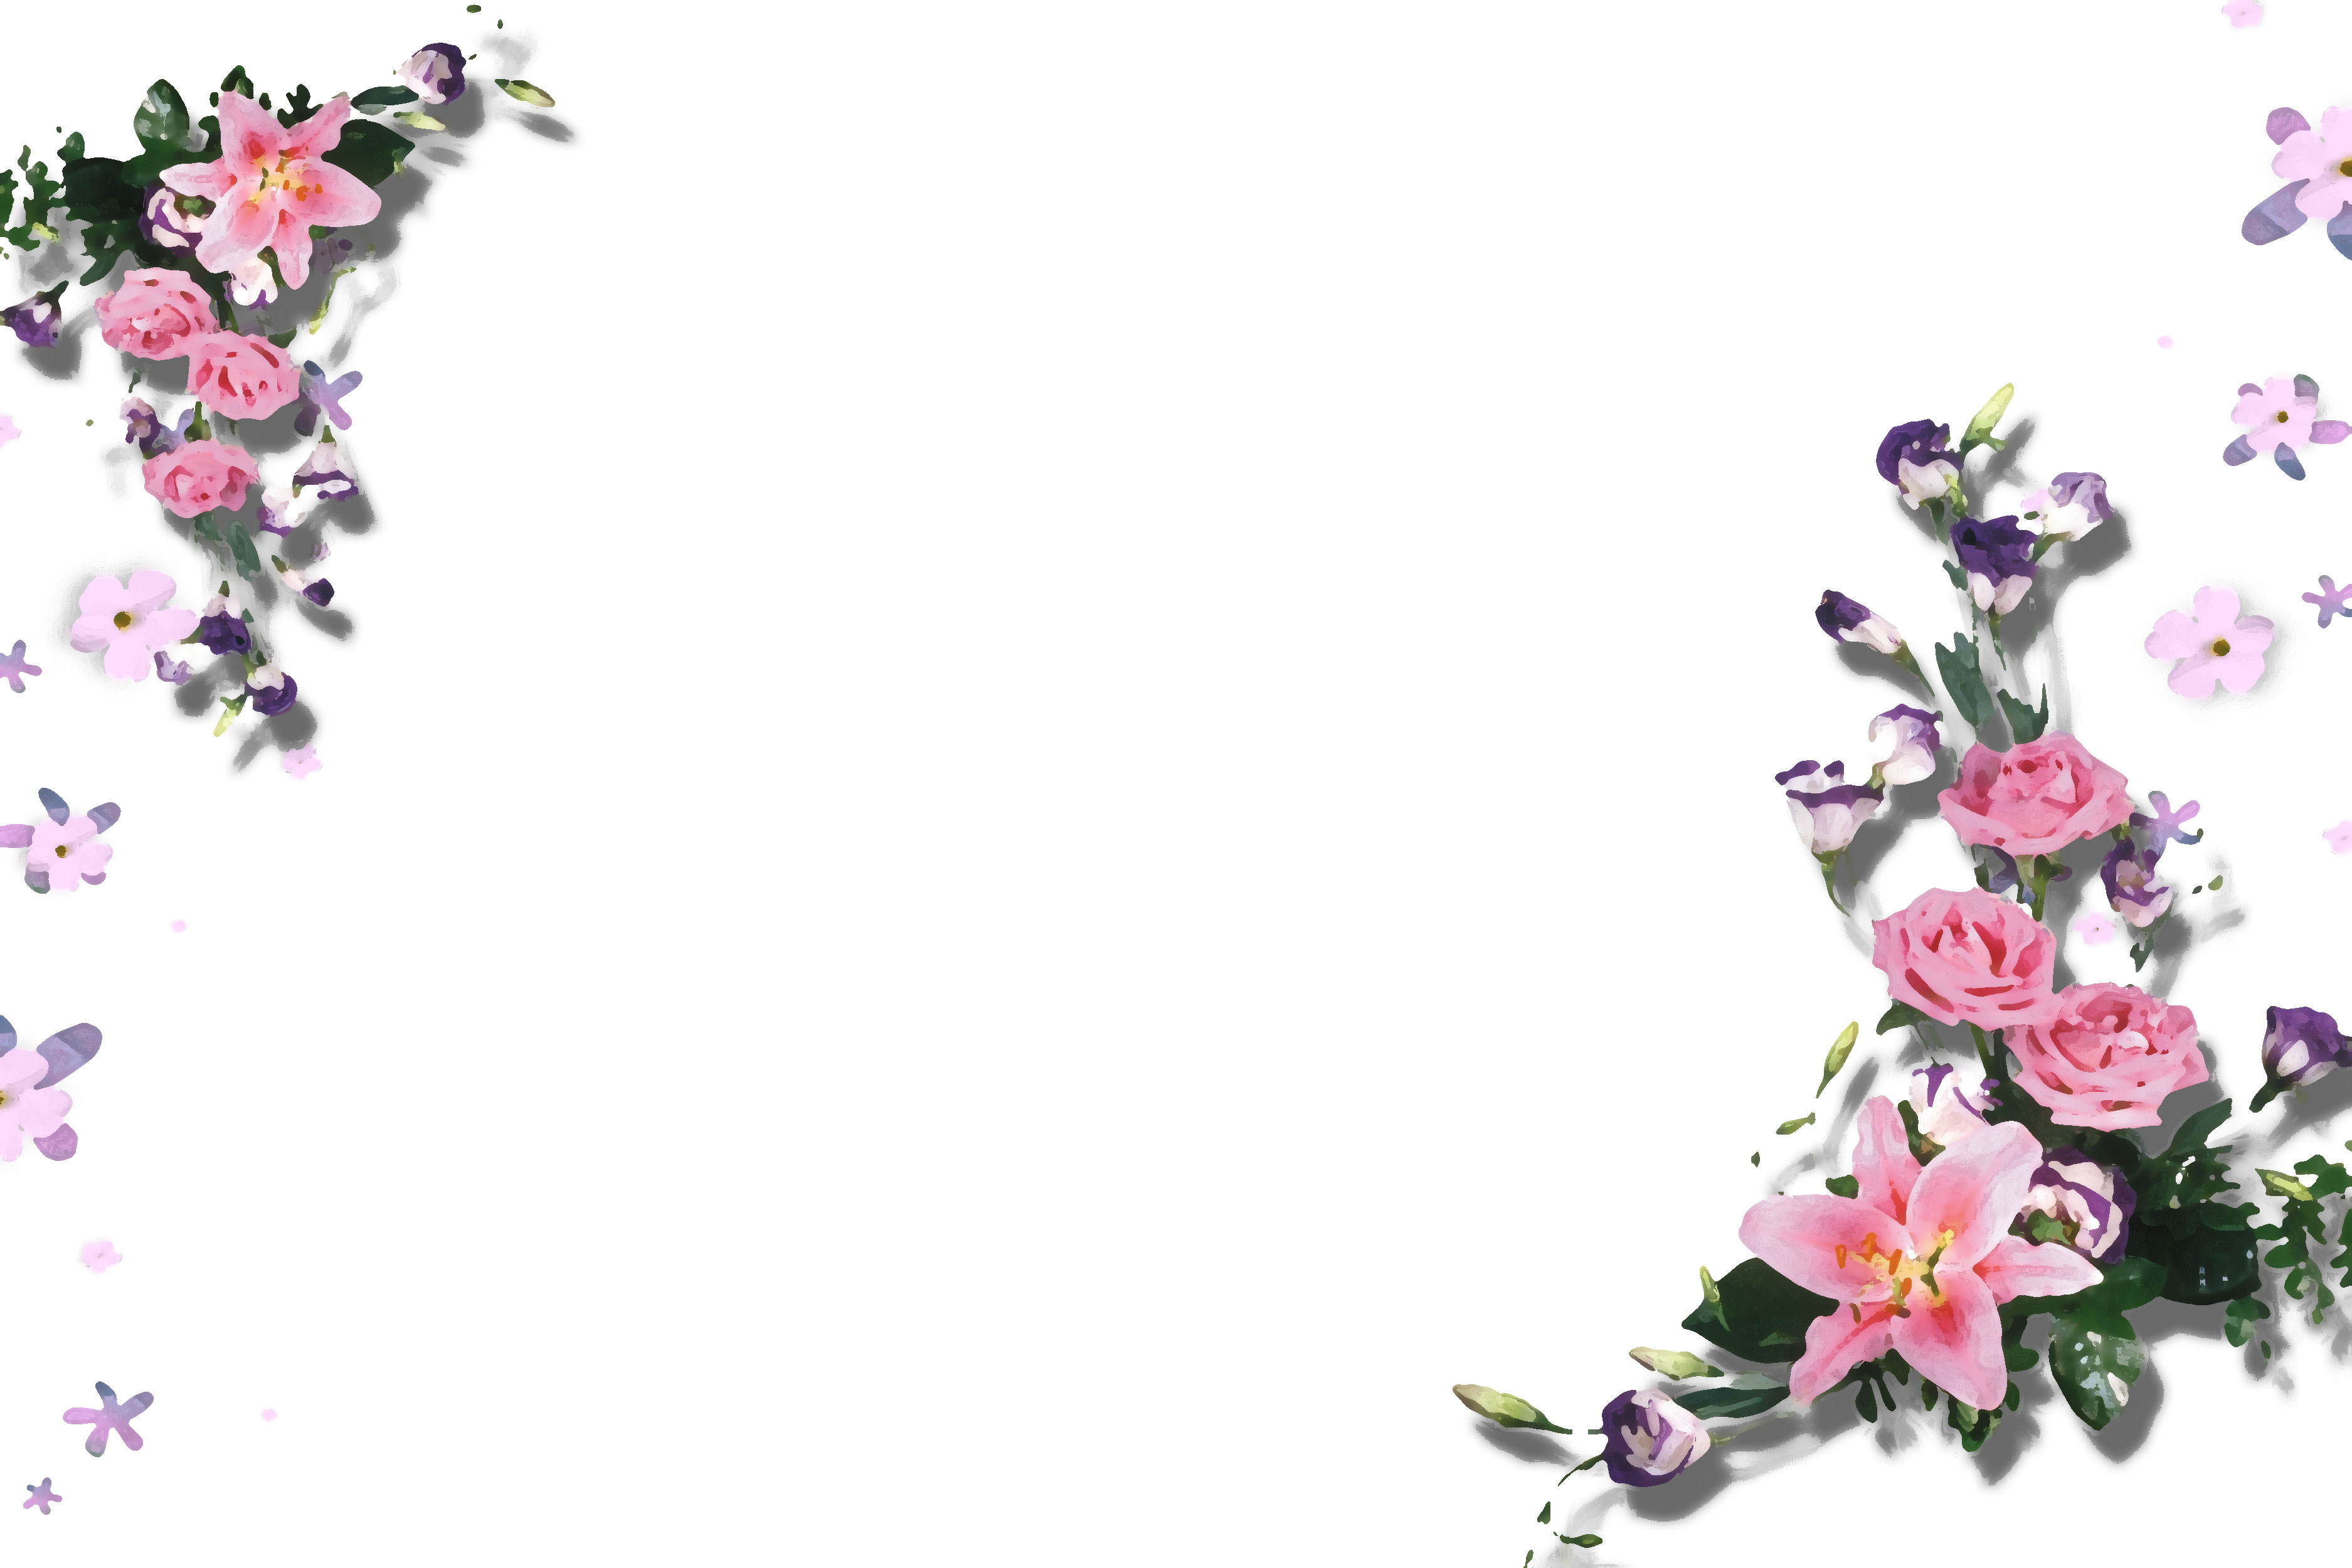 壁紙 背景イラスト 花のフレーム 外枠 No 147 ピンク ユリとバラ